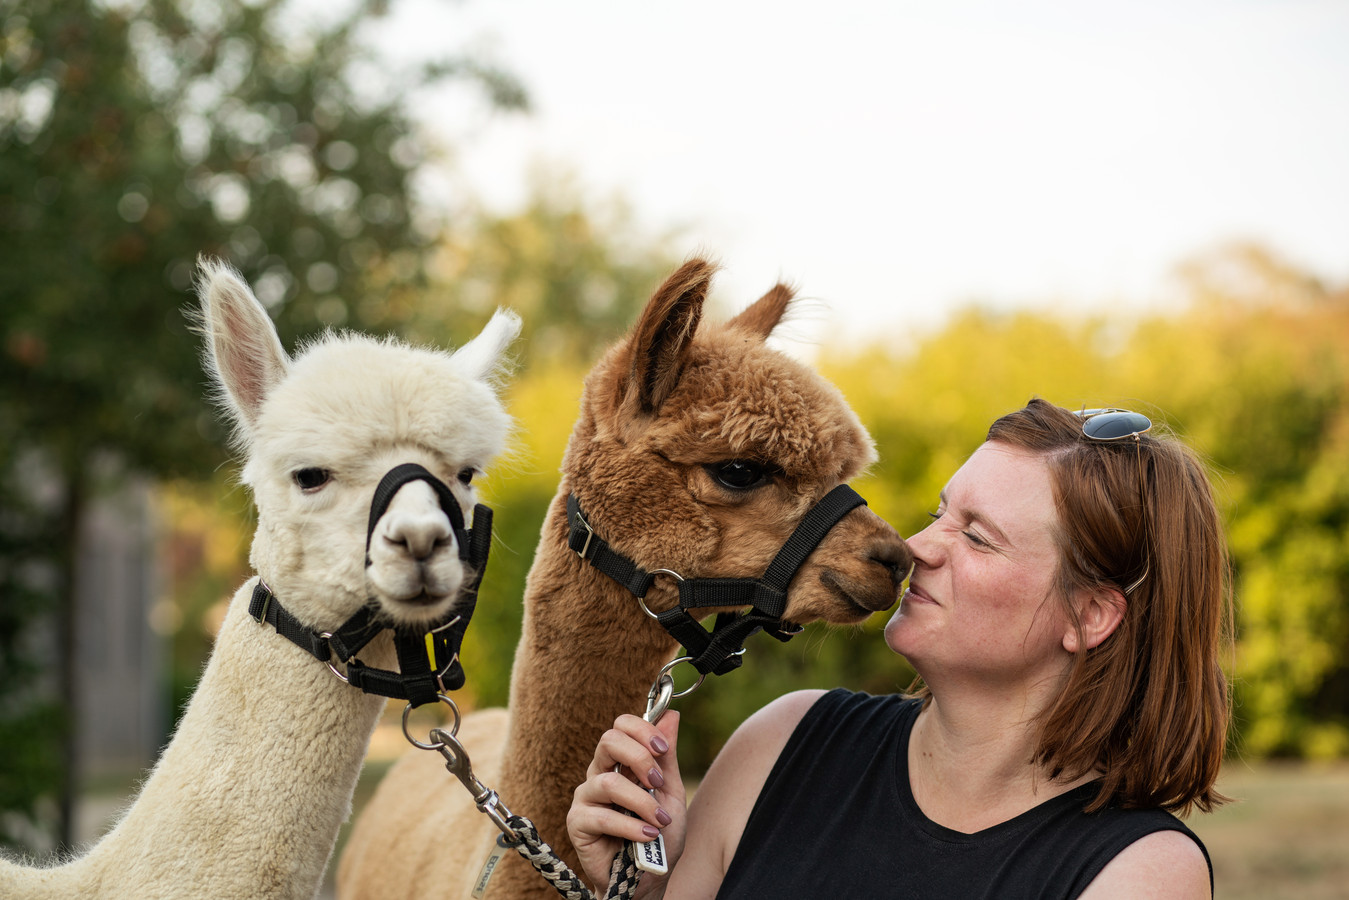 De kracht van dieren: Elise (37), Chris (56) en Jefke (12) volgen therapie met een alpaca en hond. “Ik begon steeds meer op mezelf te vertrouwen” Foto hln.be